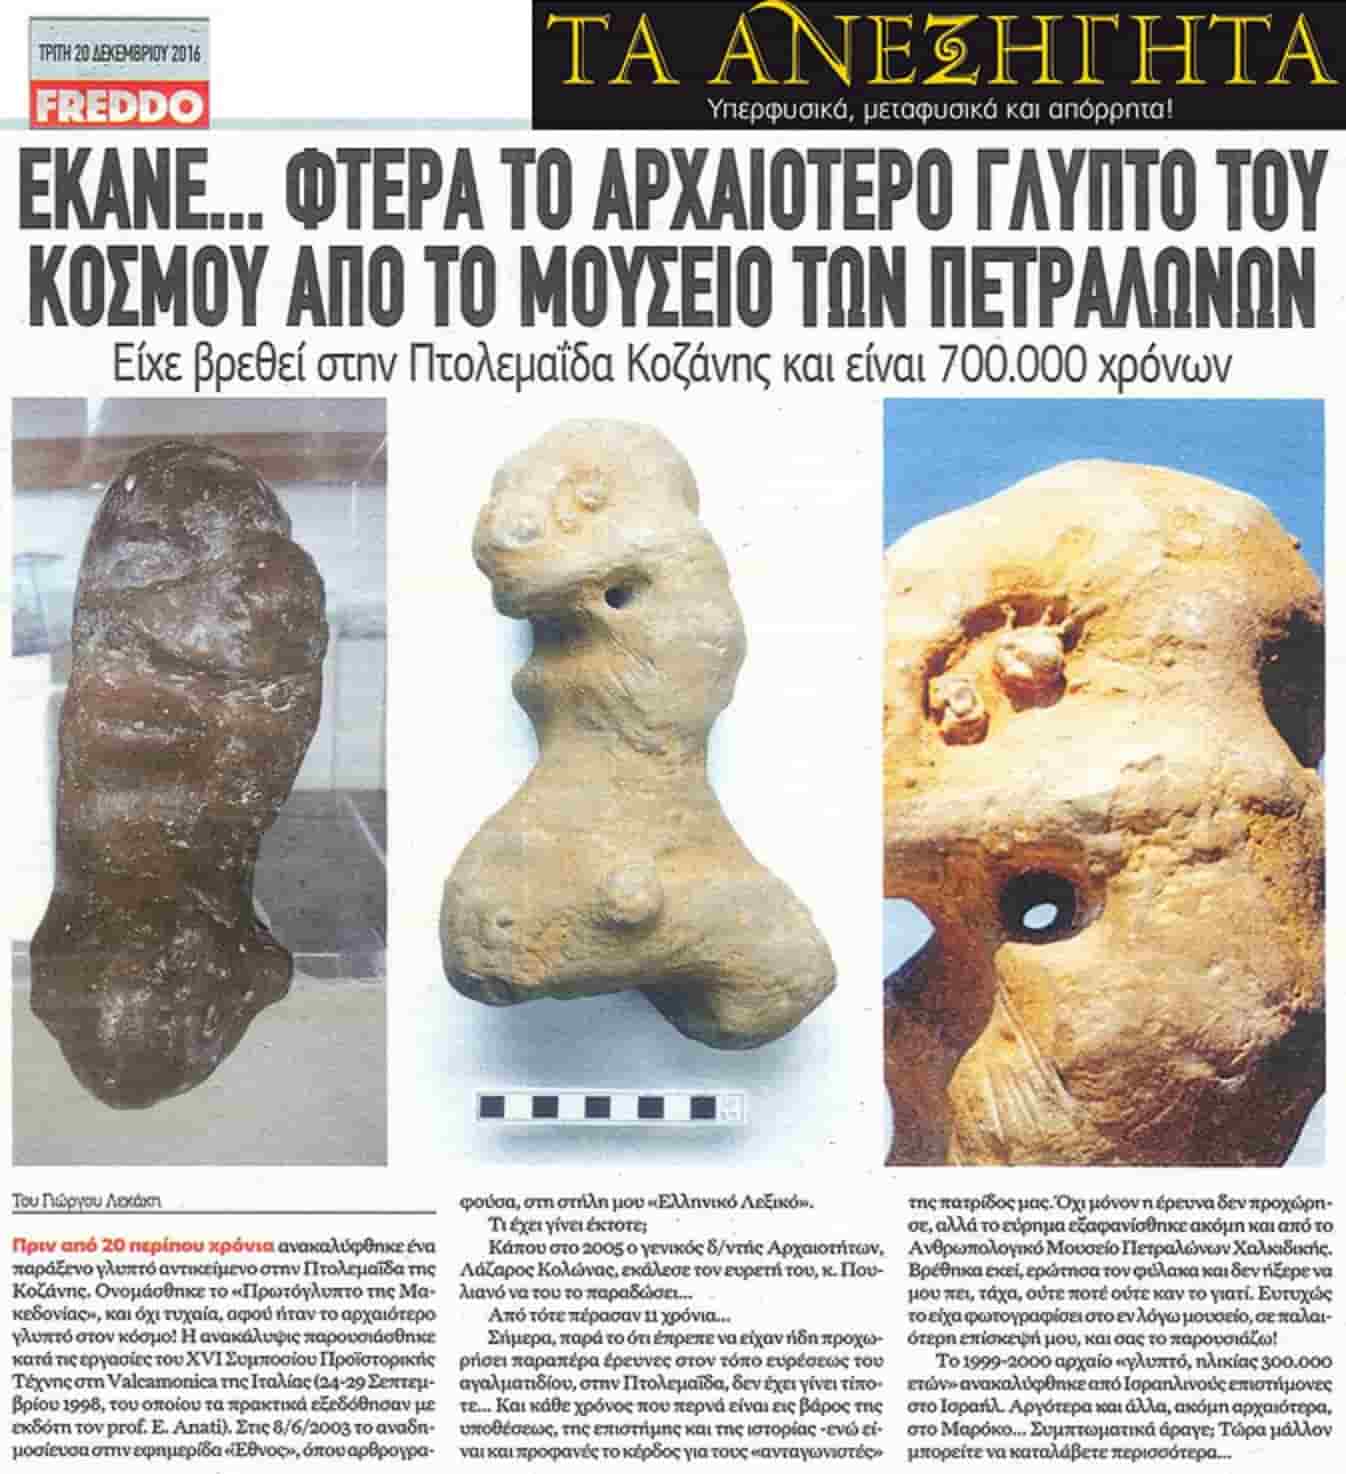 Έκανε... Φτερά το Αρχαιότερο Γλυπτό του Κόσμου από το Μουσείο Πετραλώνων Χαλκιδικής! 700.000 χρόνων